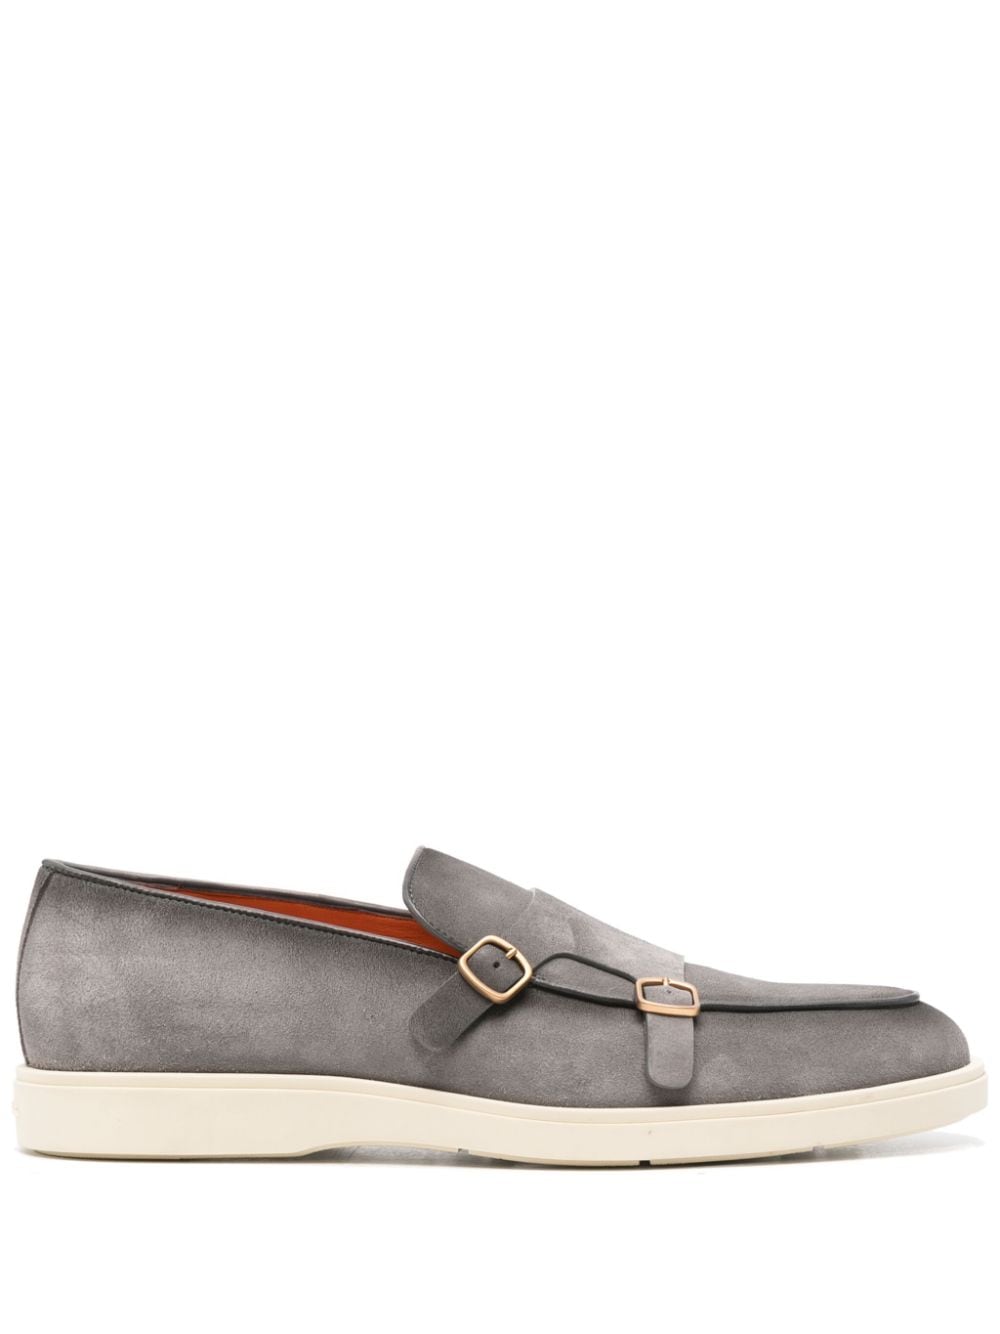 Santoni rubber-sole monk shoes - Grey von Santoni